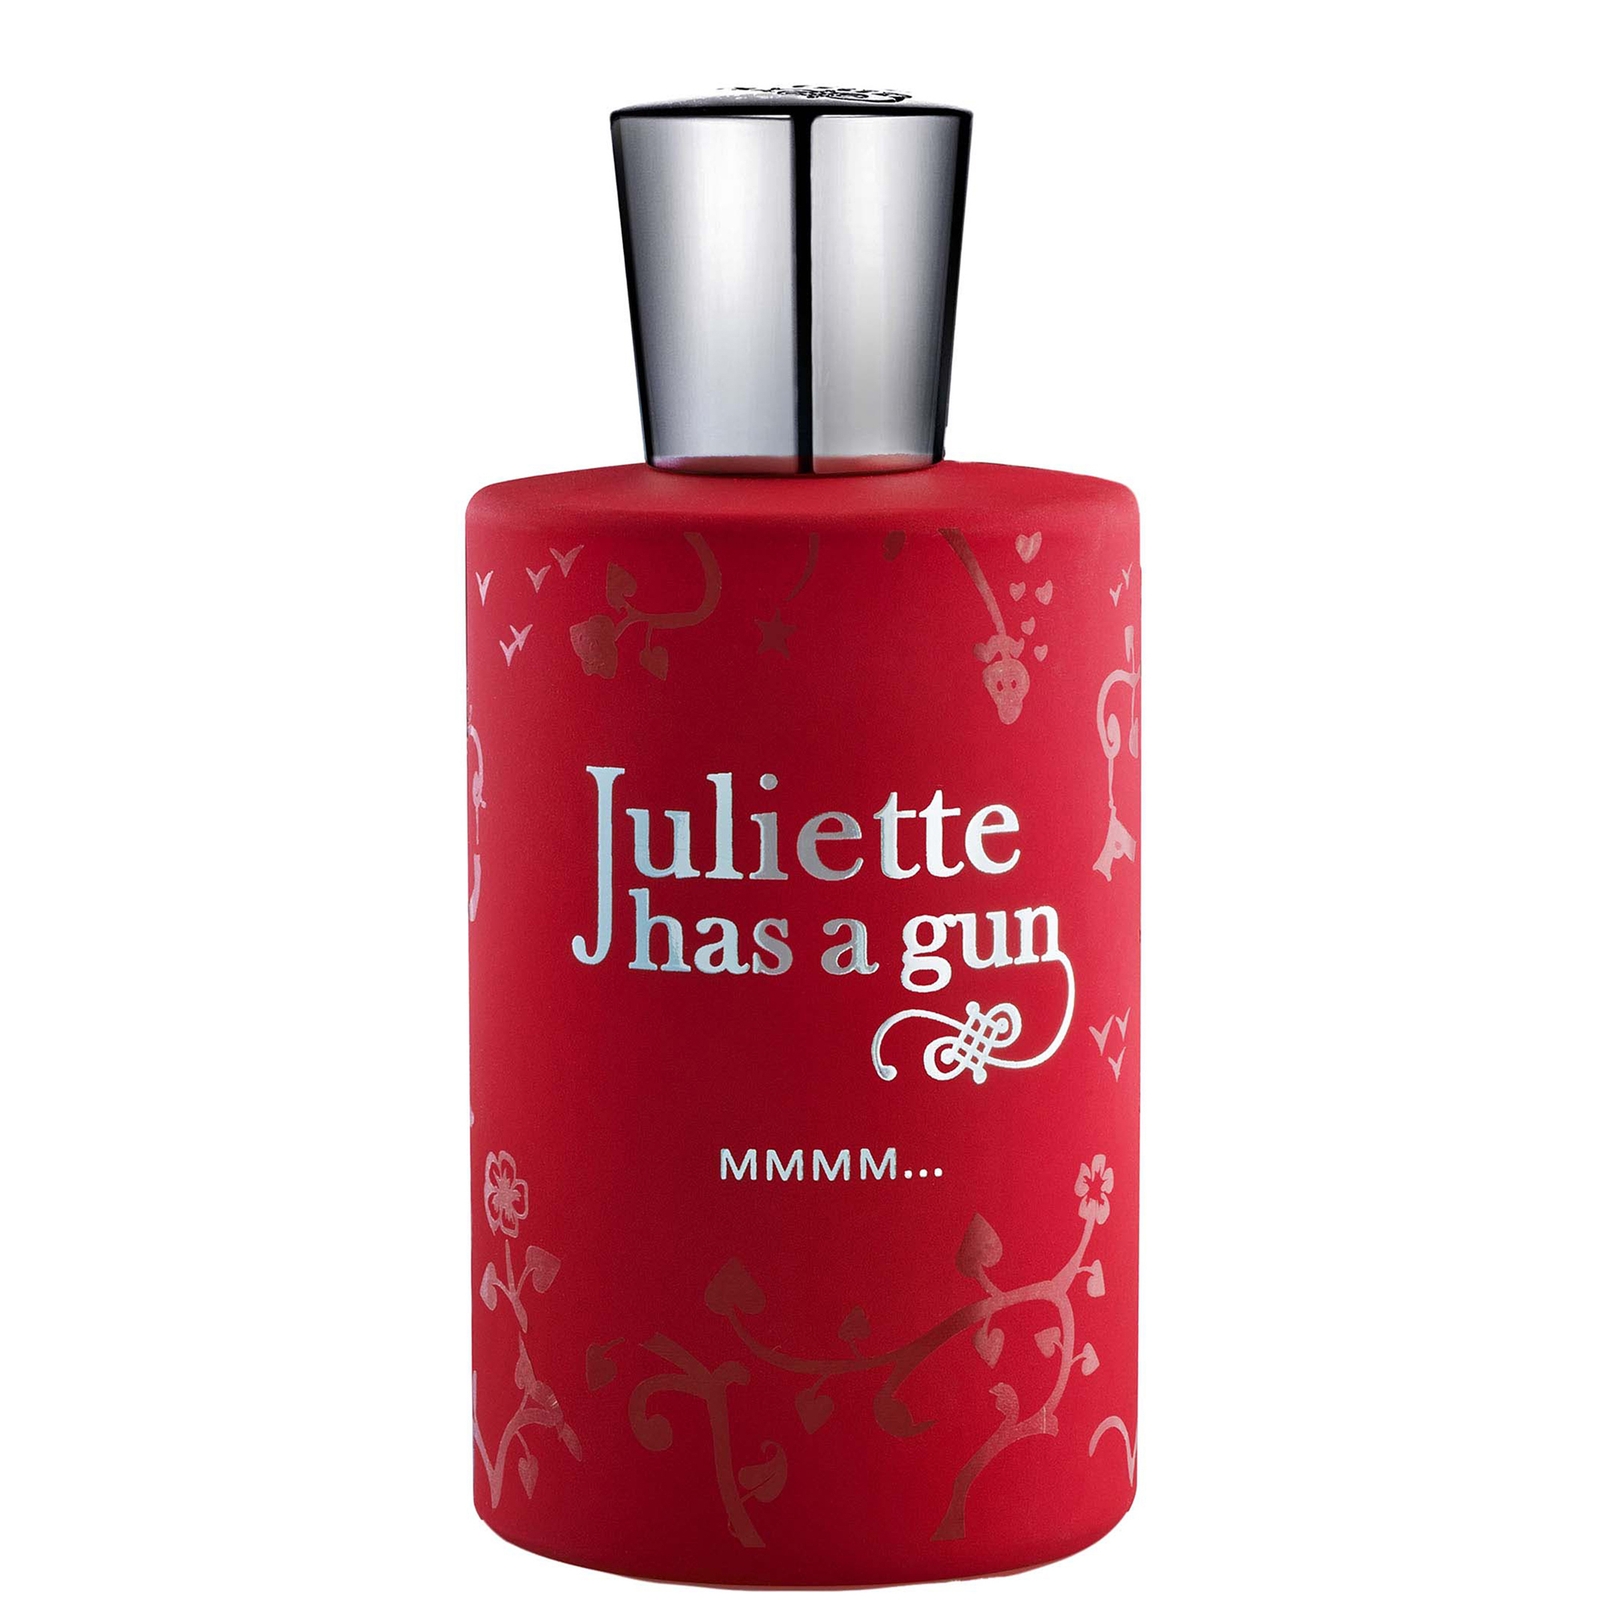 Photos - Women's Fragrance Juliette Has a Gun MMMM... Eau de Parfum 100ml JMM-100 